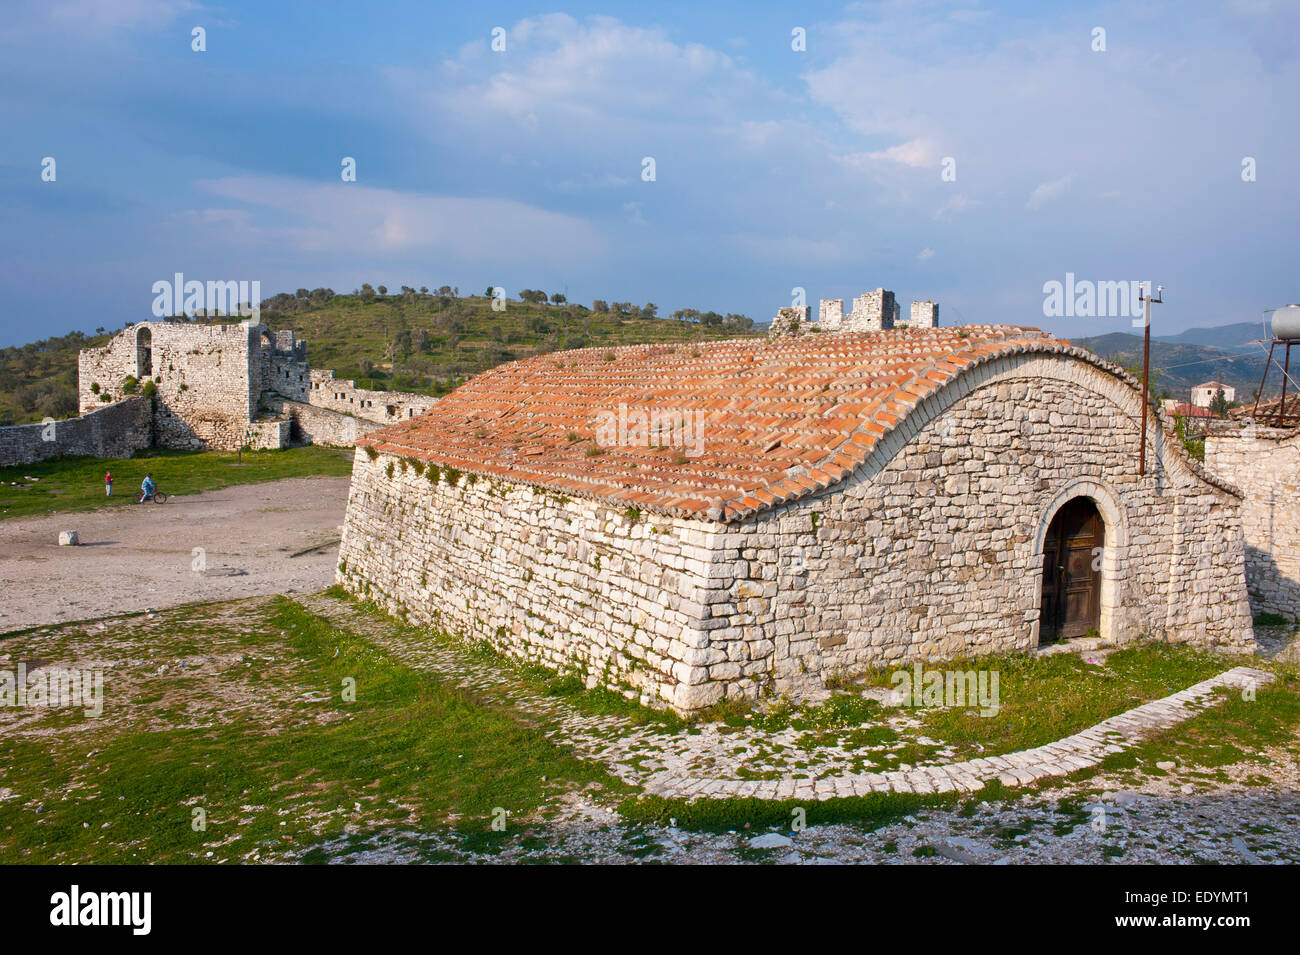 La citadelle, Site du patrimoine mondial de l'UNESCO, Berat, Albanie Banque D'Images